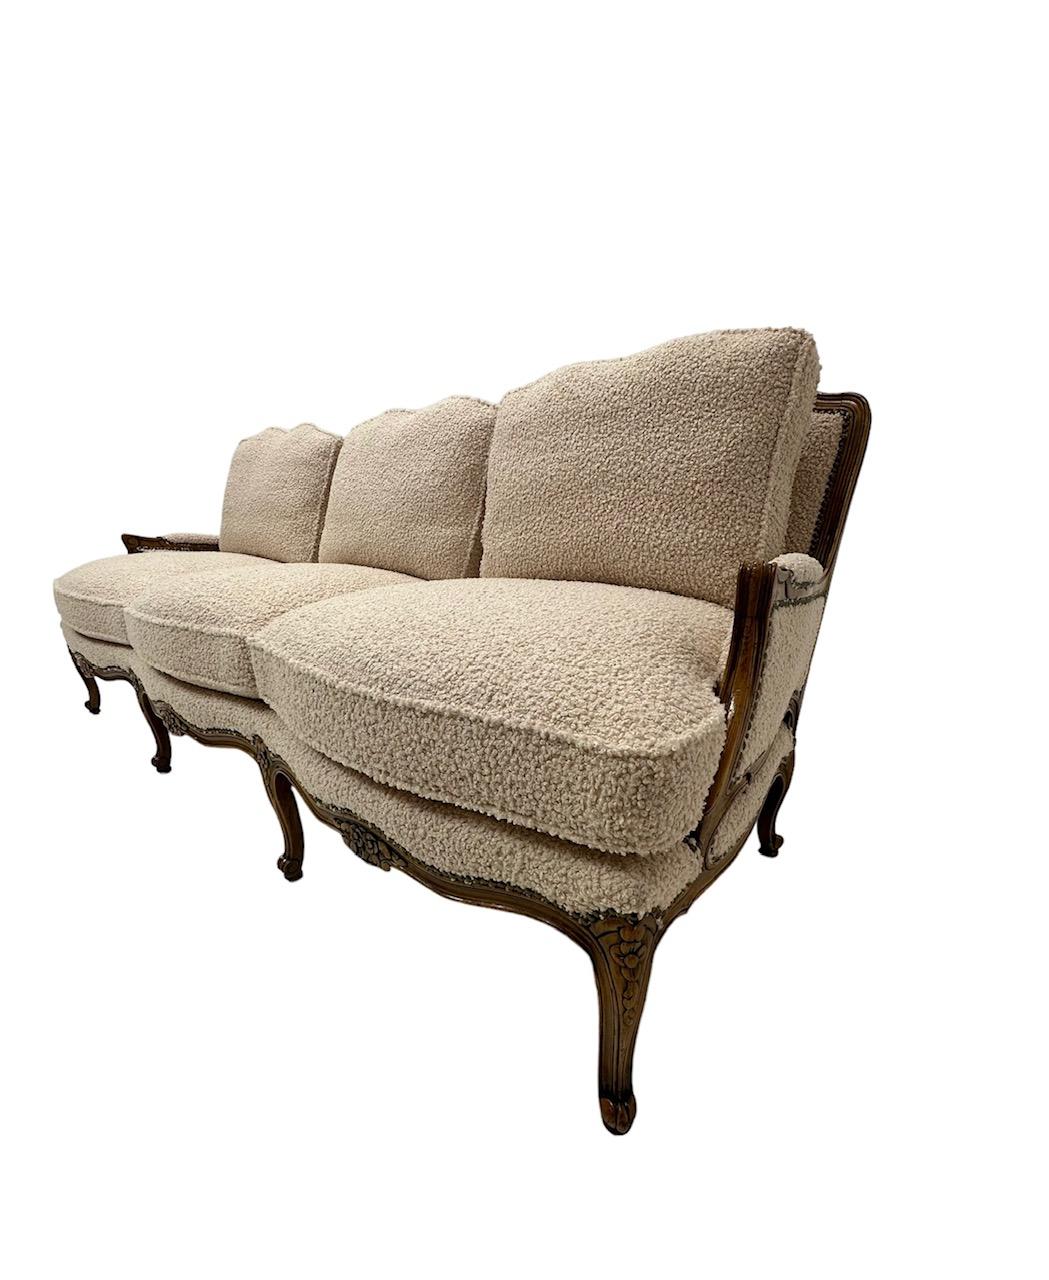 Dieses Sofa im Stil Ludwigs XV. zeugt von der Opulenz und Kreativität der dynastischen französischen Monarchie. Das vollständig restaurierte Sofa ist mit einem ebenso luxuriösen, muschelweißen italienischen Bouclé bezogen. Die äußerst bequemen